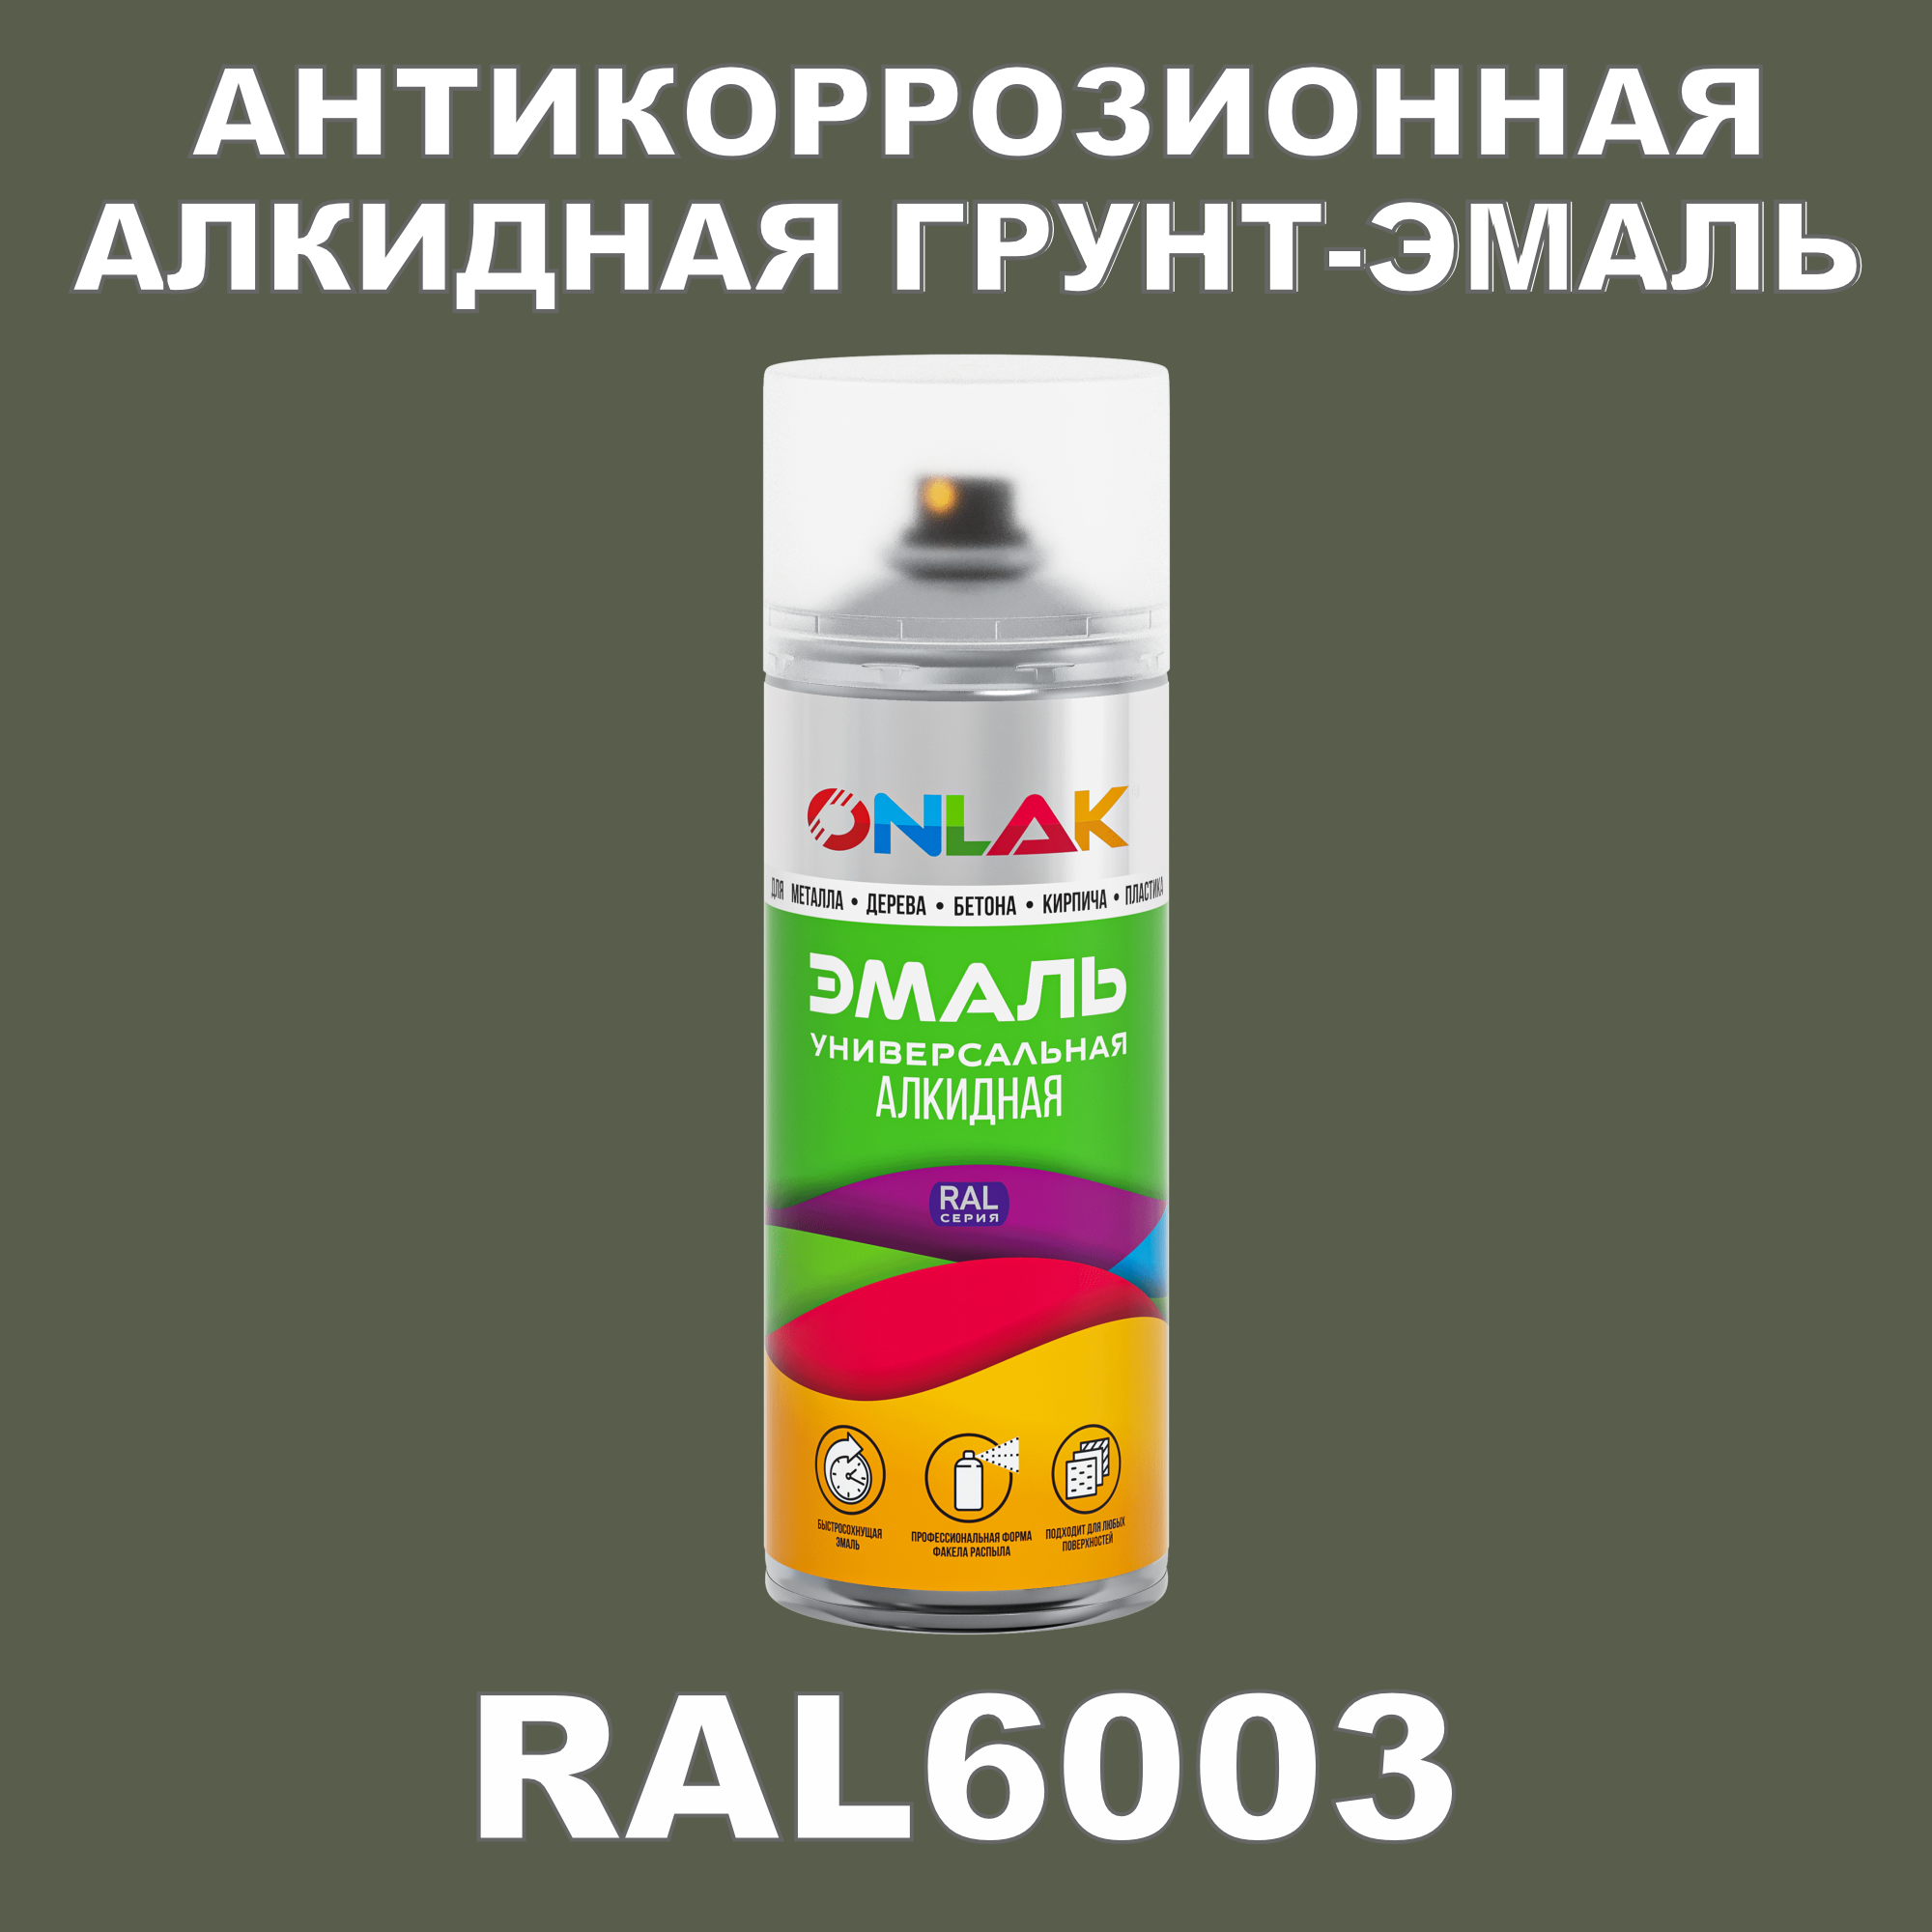 Антикоррозионная грунт-эмаль ONLAK RAL 6003,зеленый,681 мл